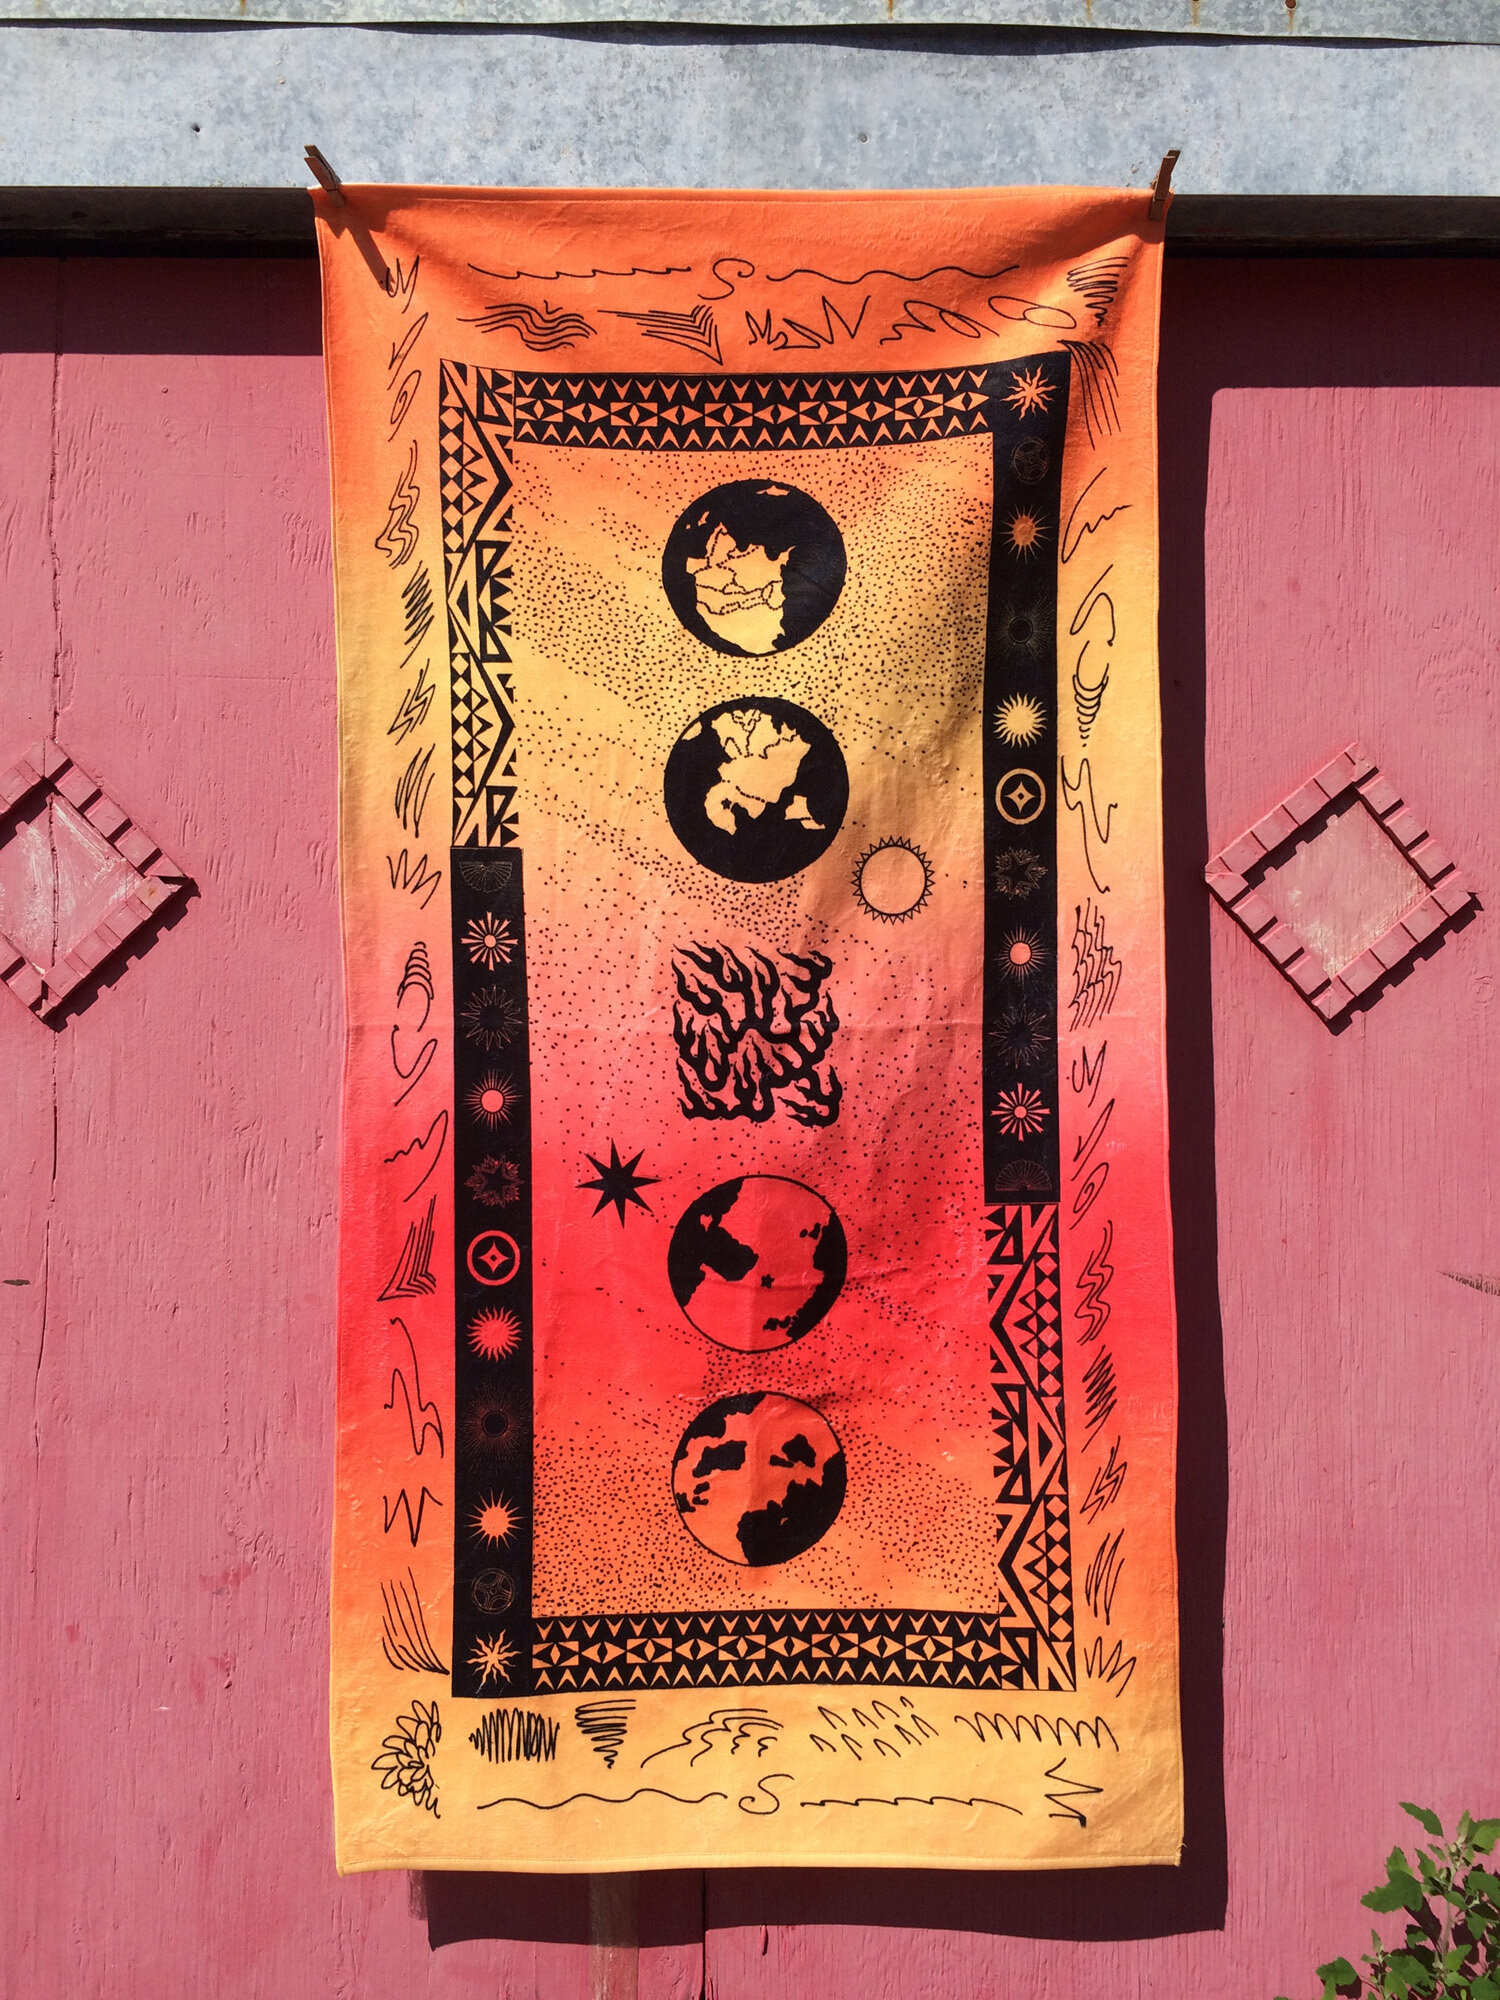  Beach towel  Dye Sublimation print on terry cloth   30” x 60”  2020 